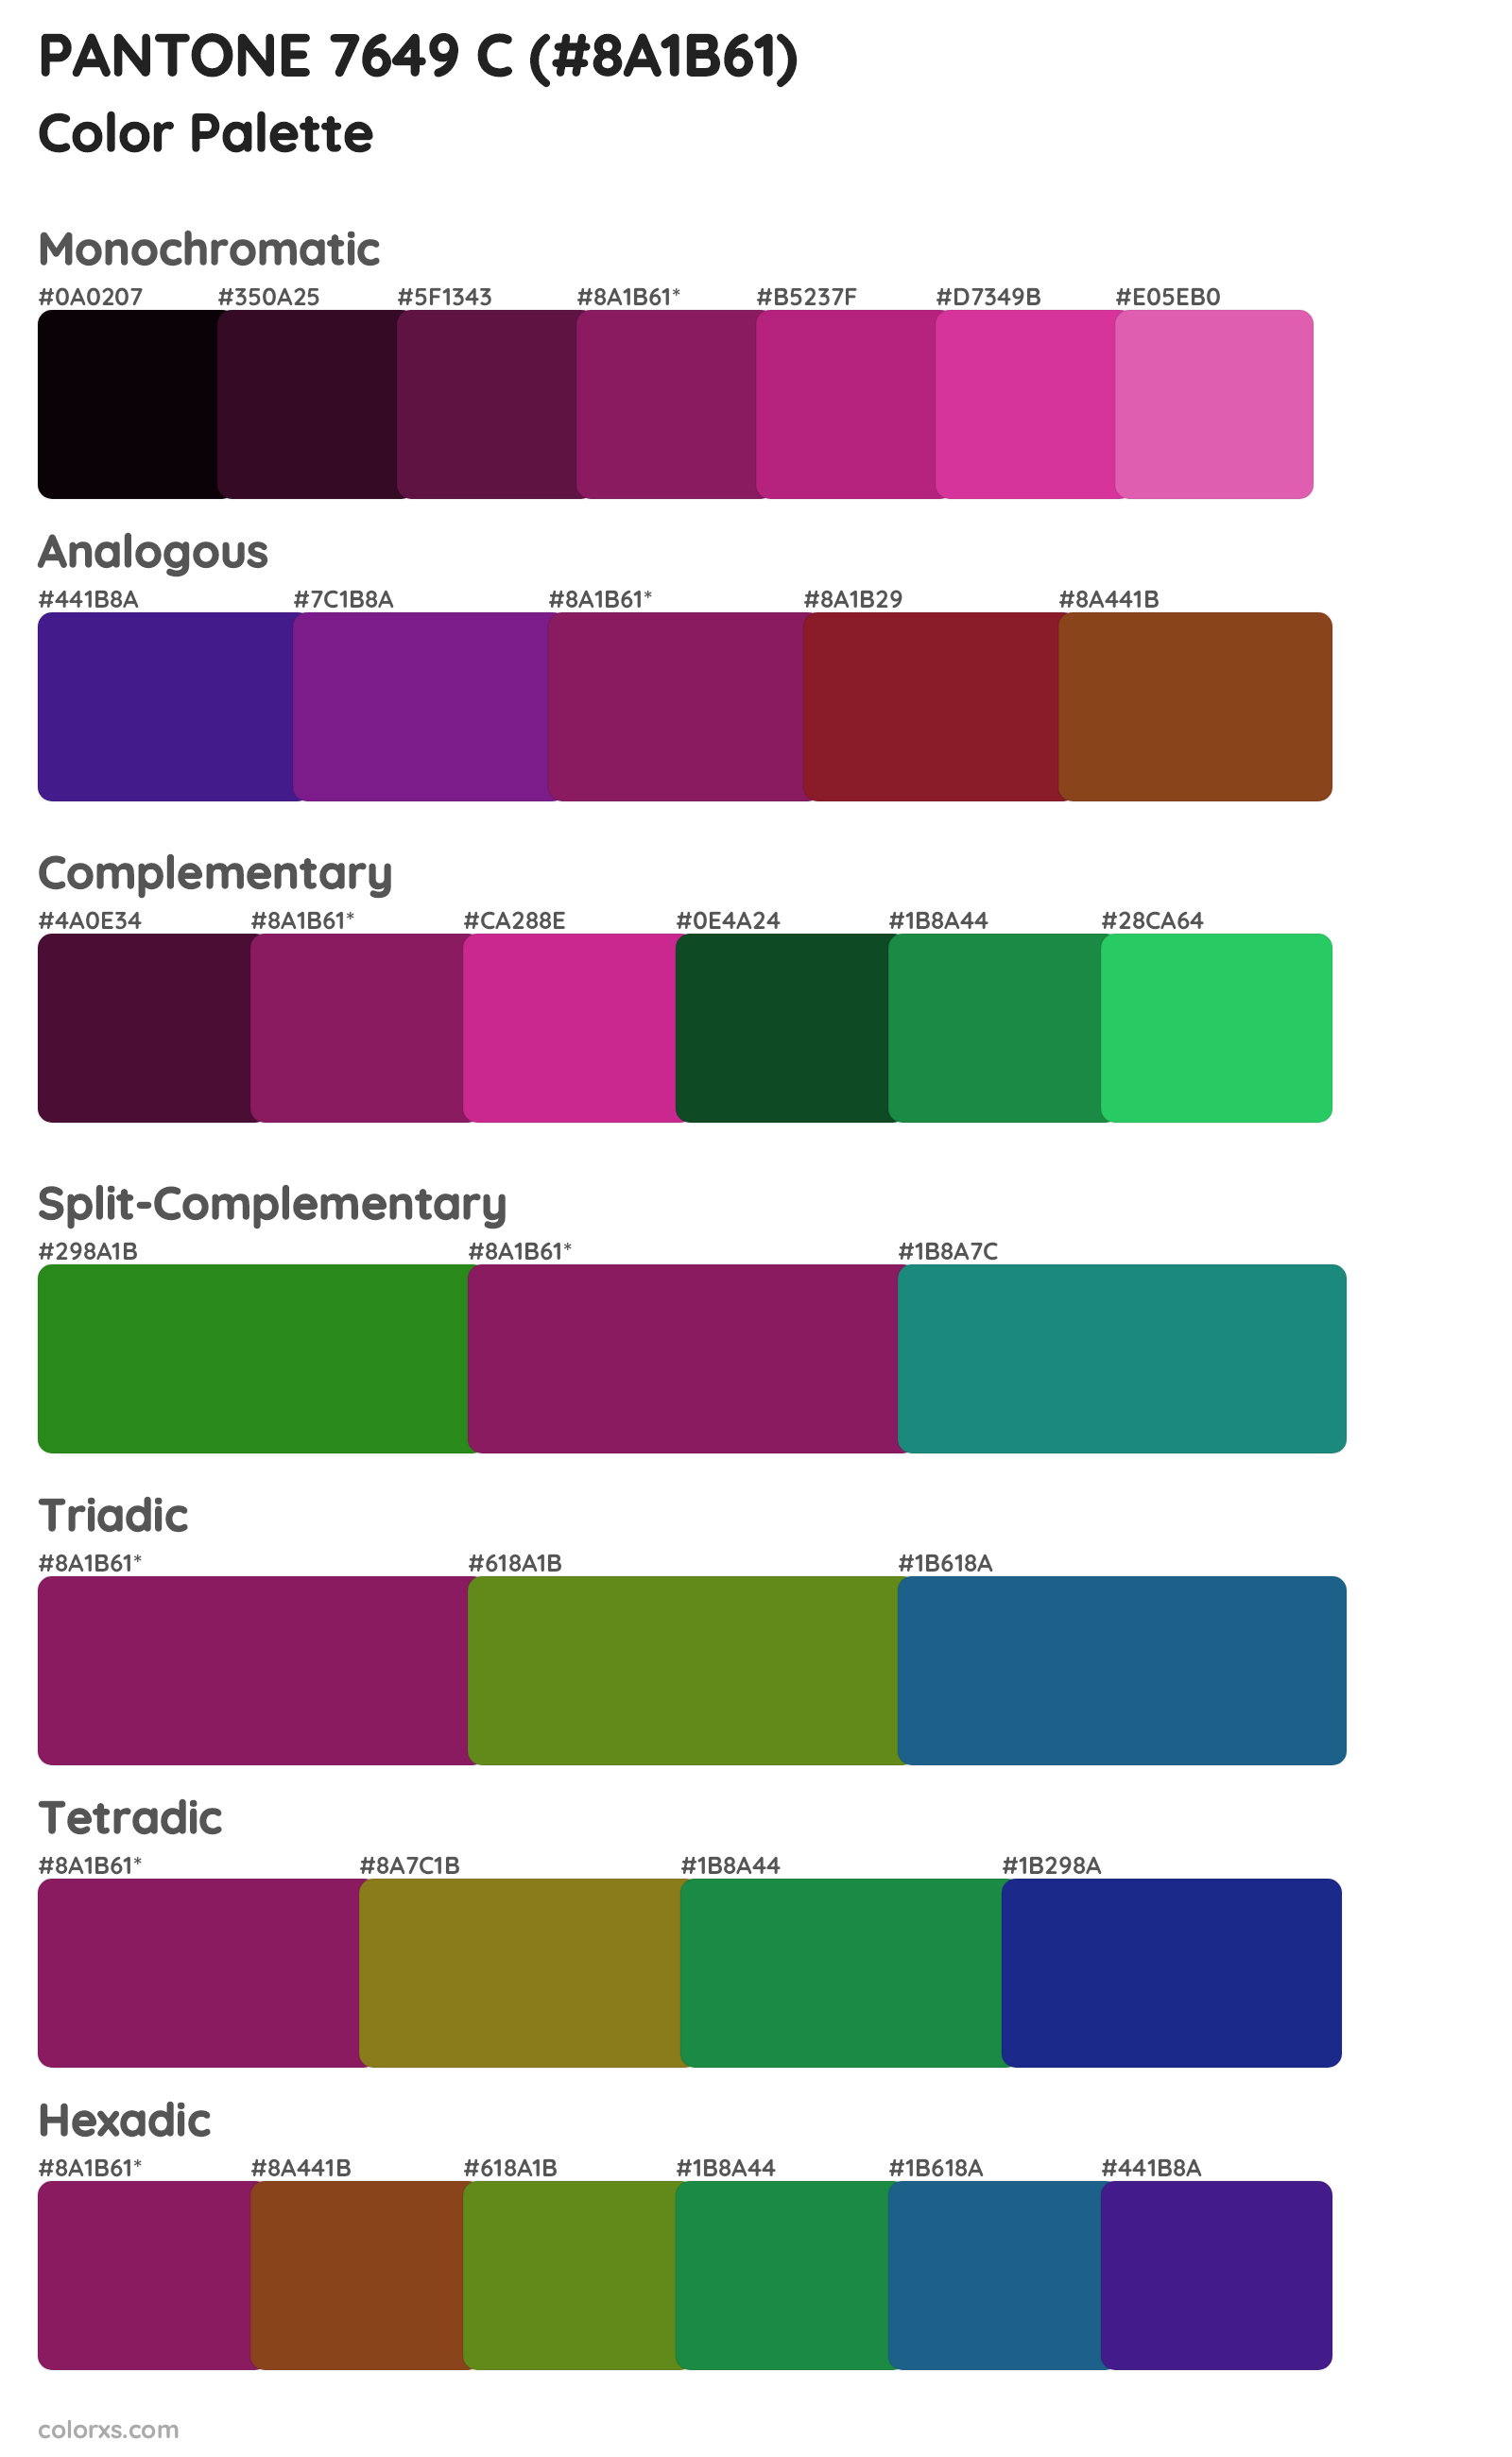 PANTONE 7649 C Color Scheme Palettes